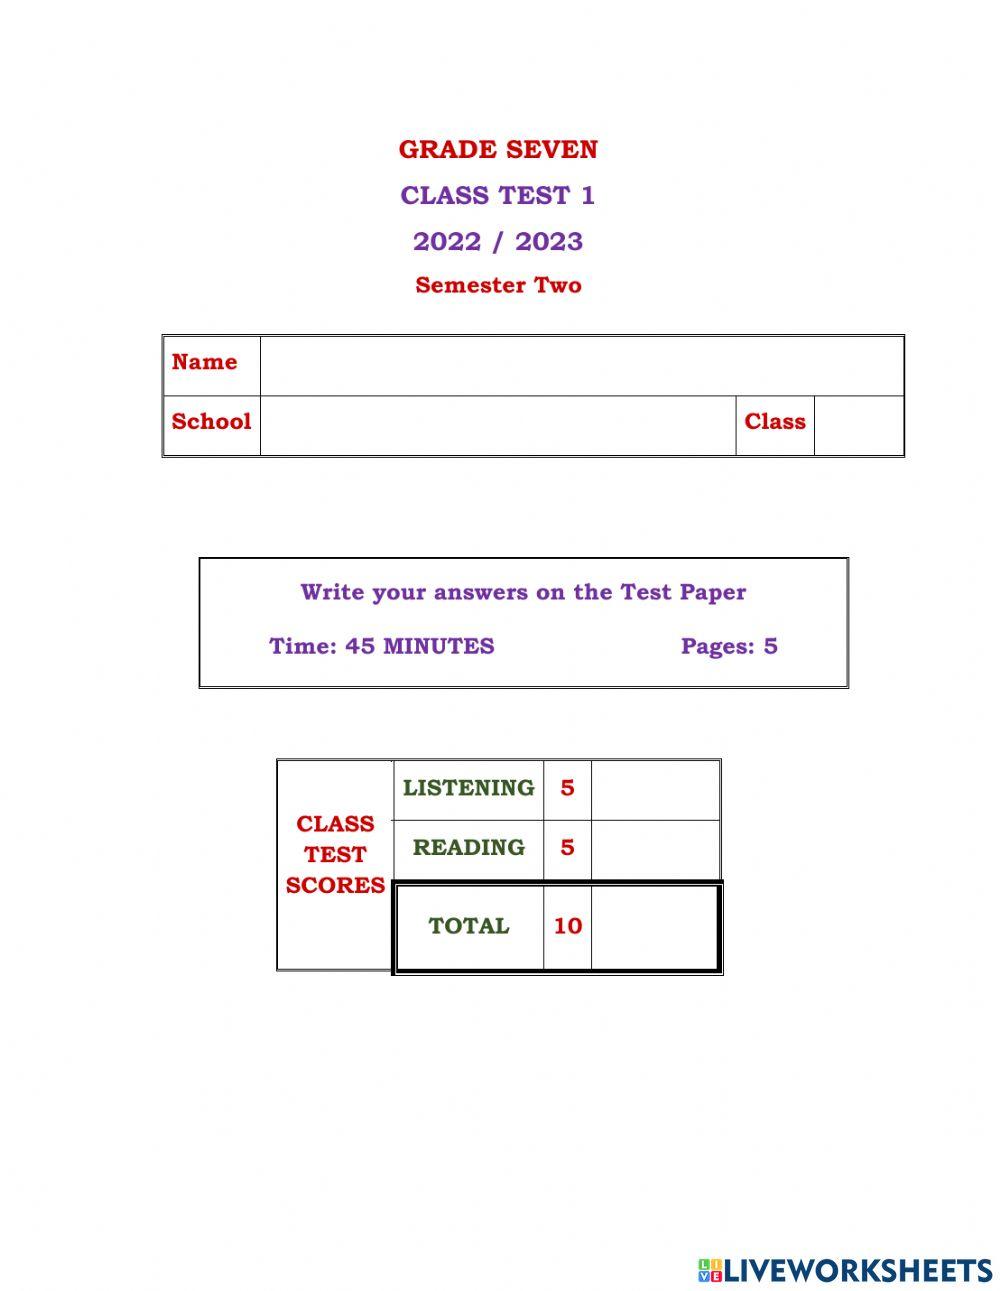 Grade 7 Class test 1 S 2